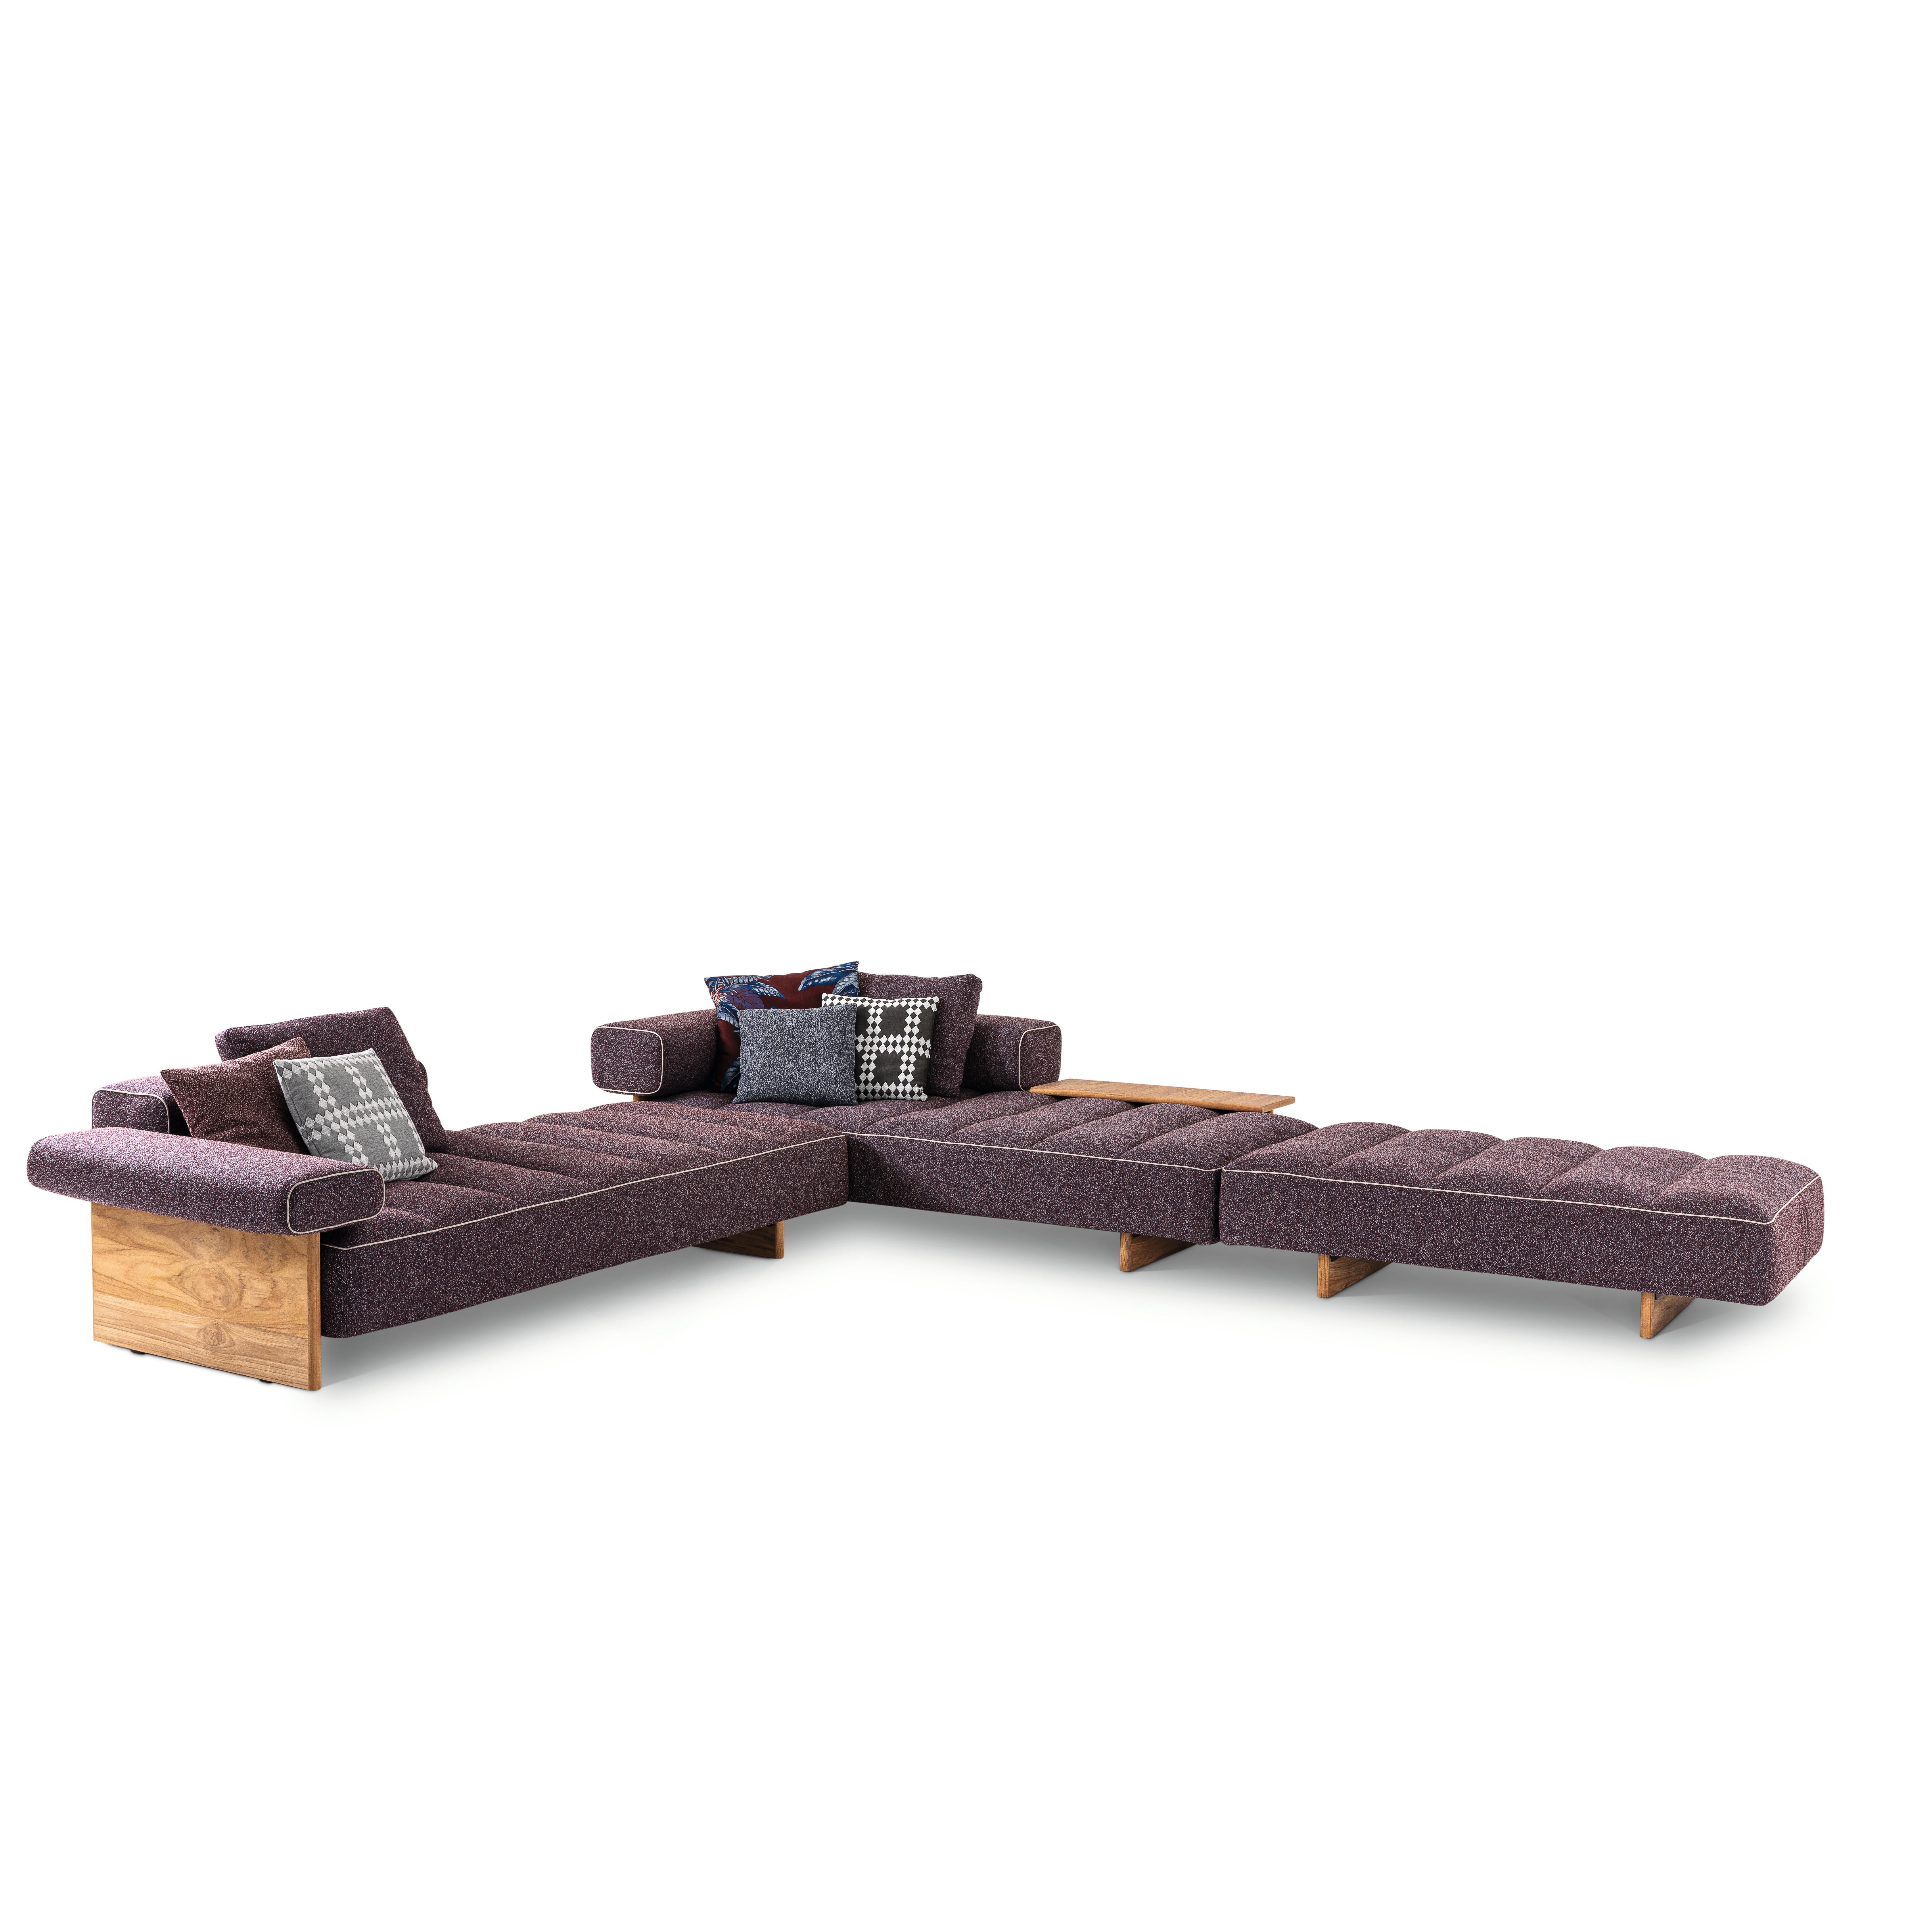 Sofa entworfen von Rodolfo Dordoni im Jahr 2020. Hergestellt von Cassina in Italien.

Inspiriert vom Geist der Badeorte der 1950er Jahre, ist Sail Out ein modulares Sofa für den Außenbereich, das dank der einzelnen Bänder mit herausnehmbarer